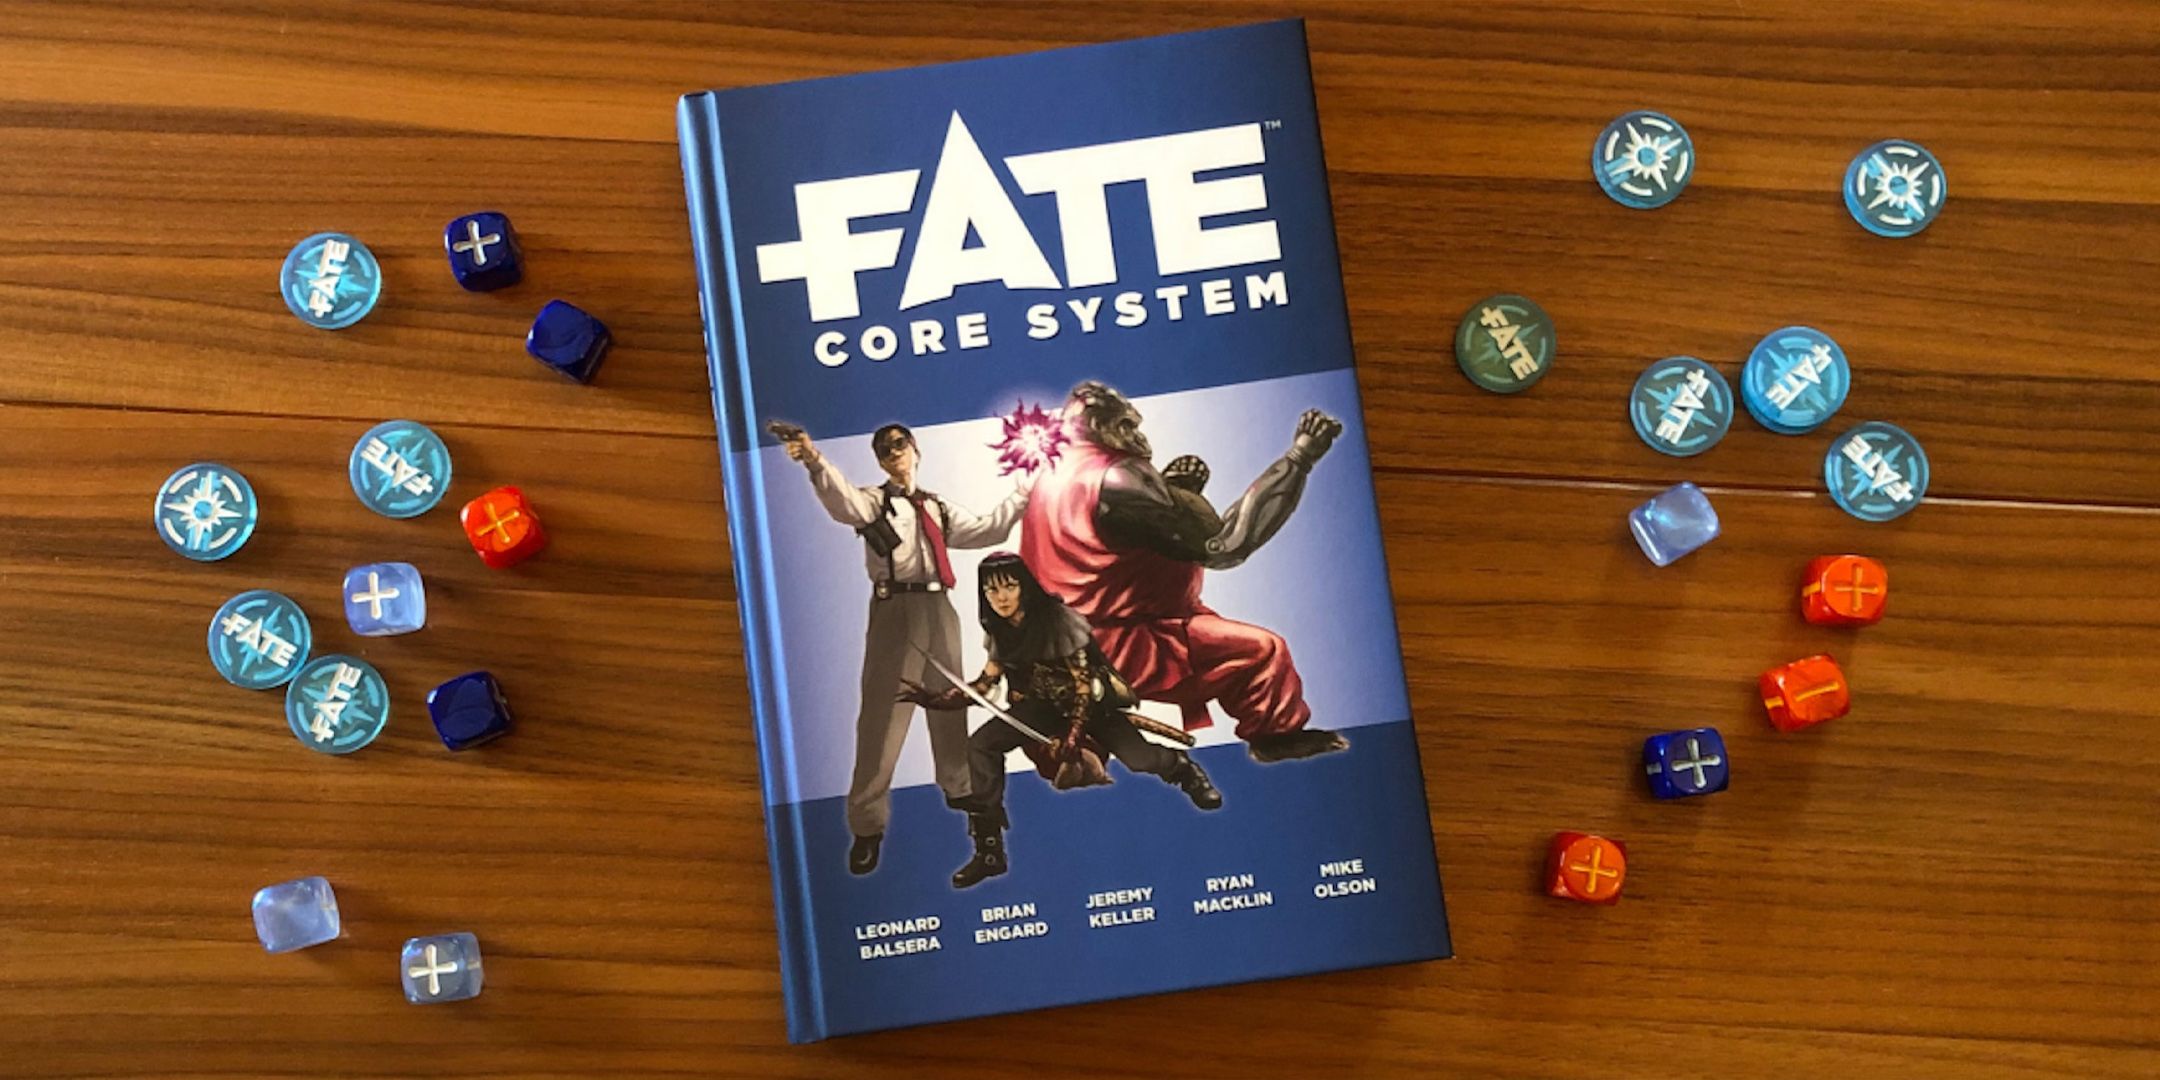 O livro TTRPG do Fate Core System está sobre uma mesa cercada por dados.